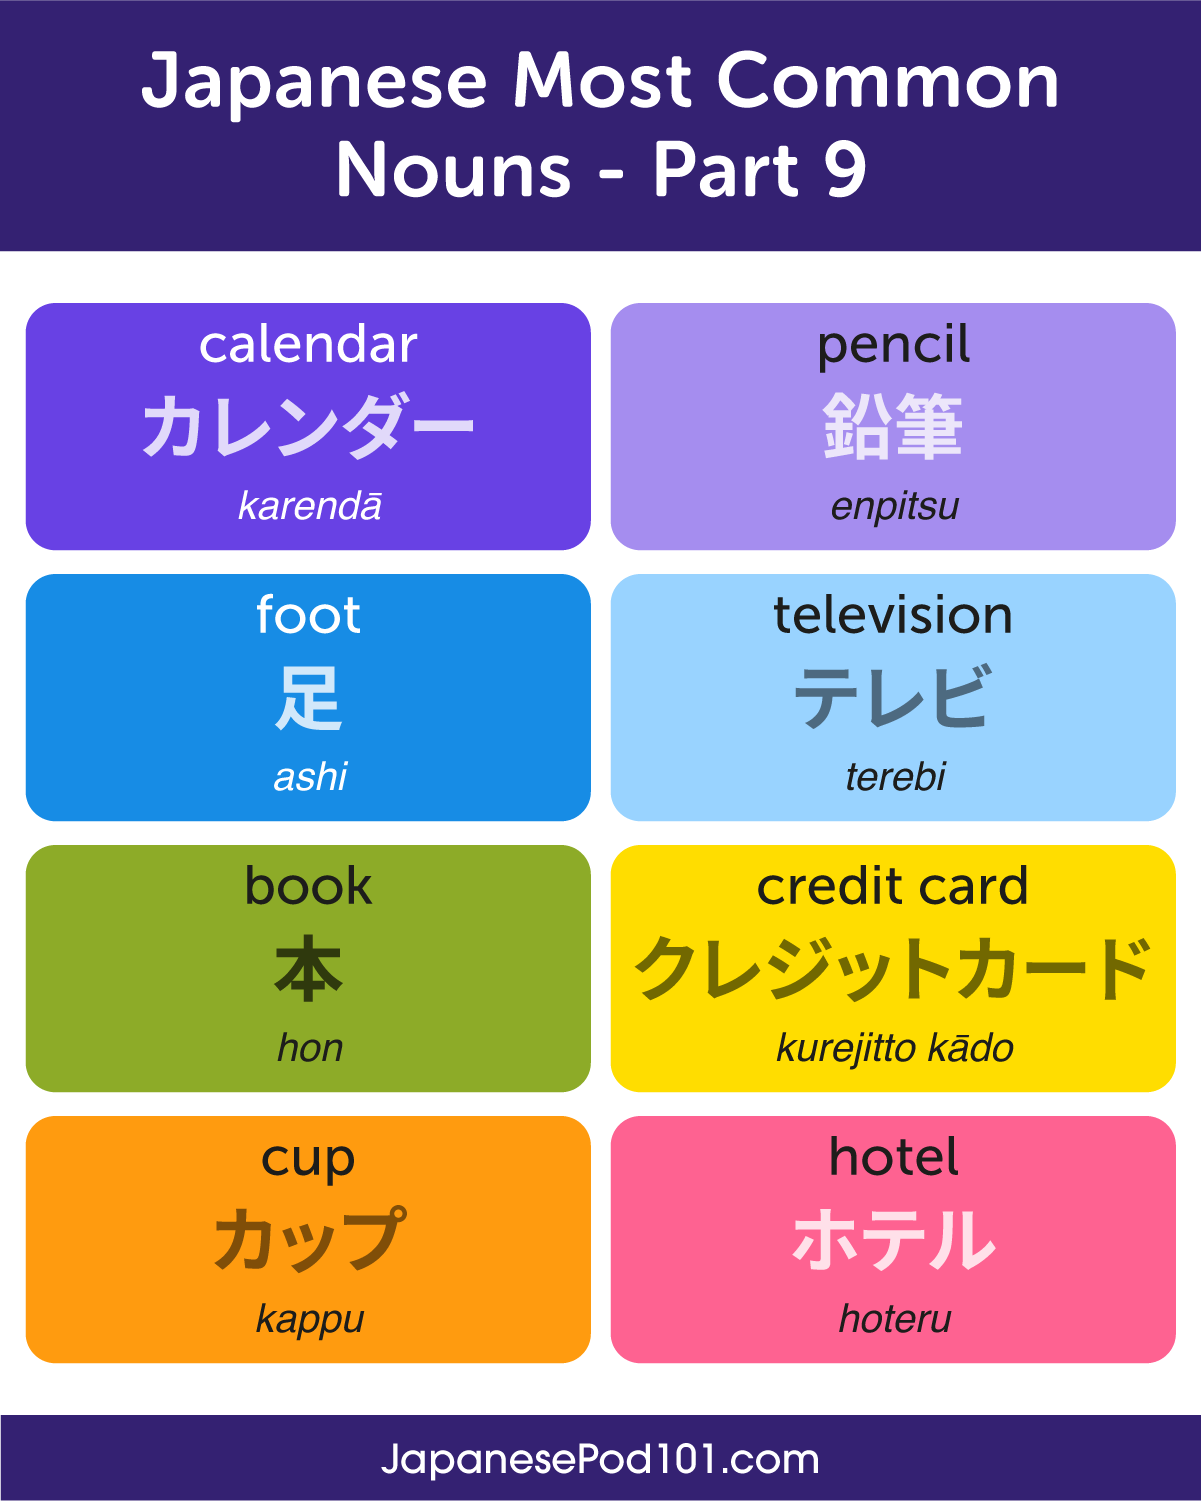 learning japanese for beginners reddit